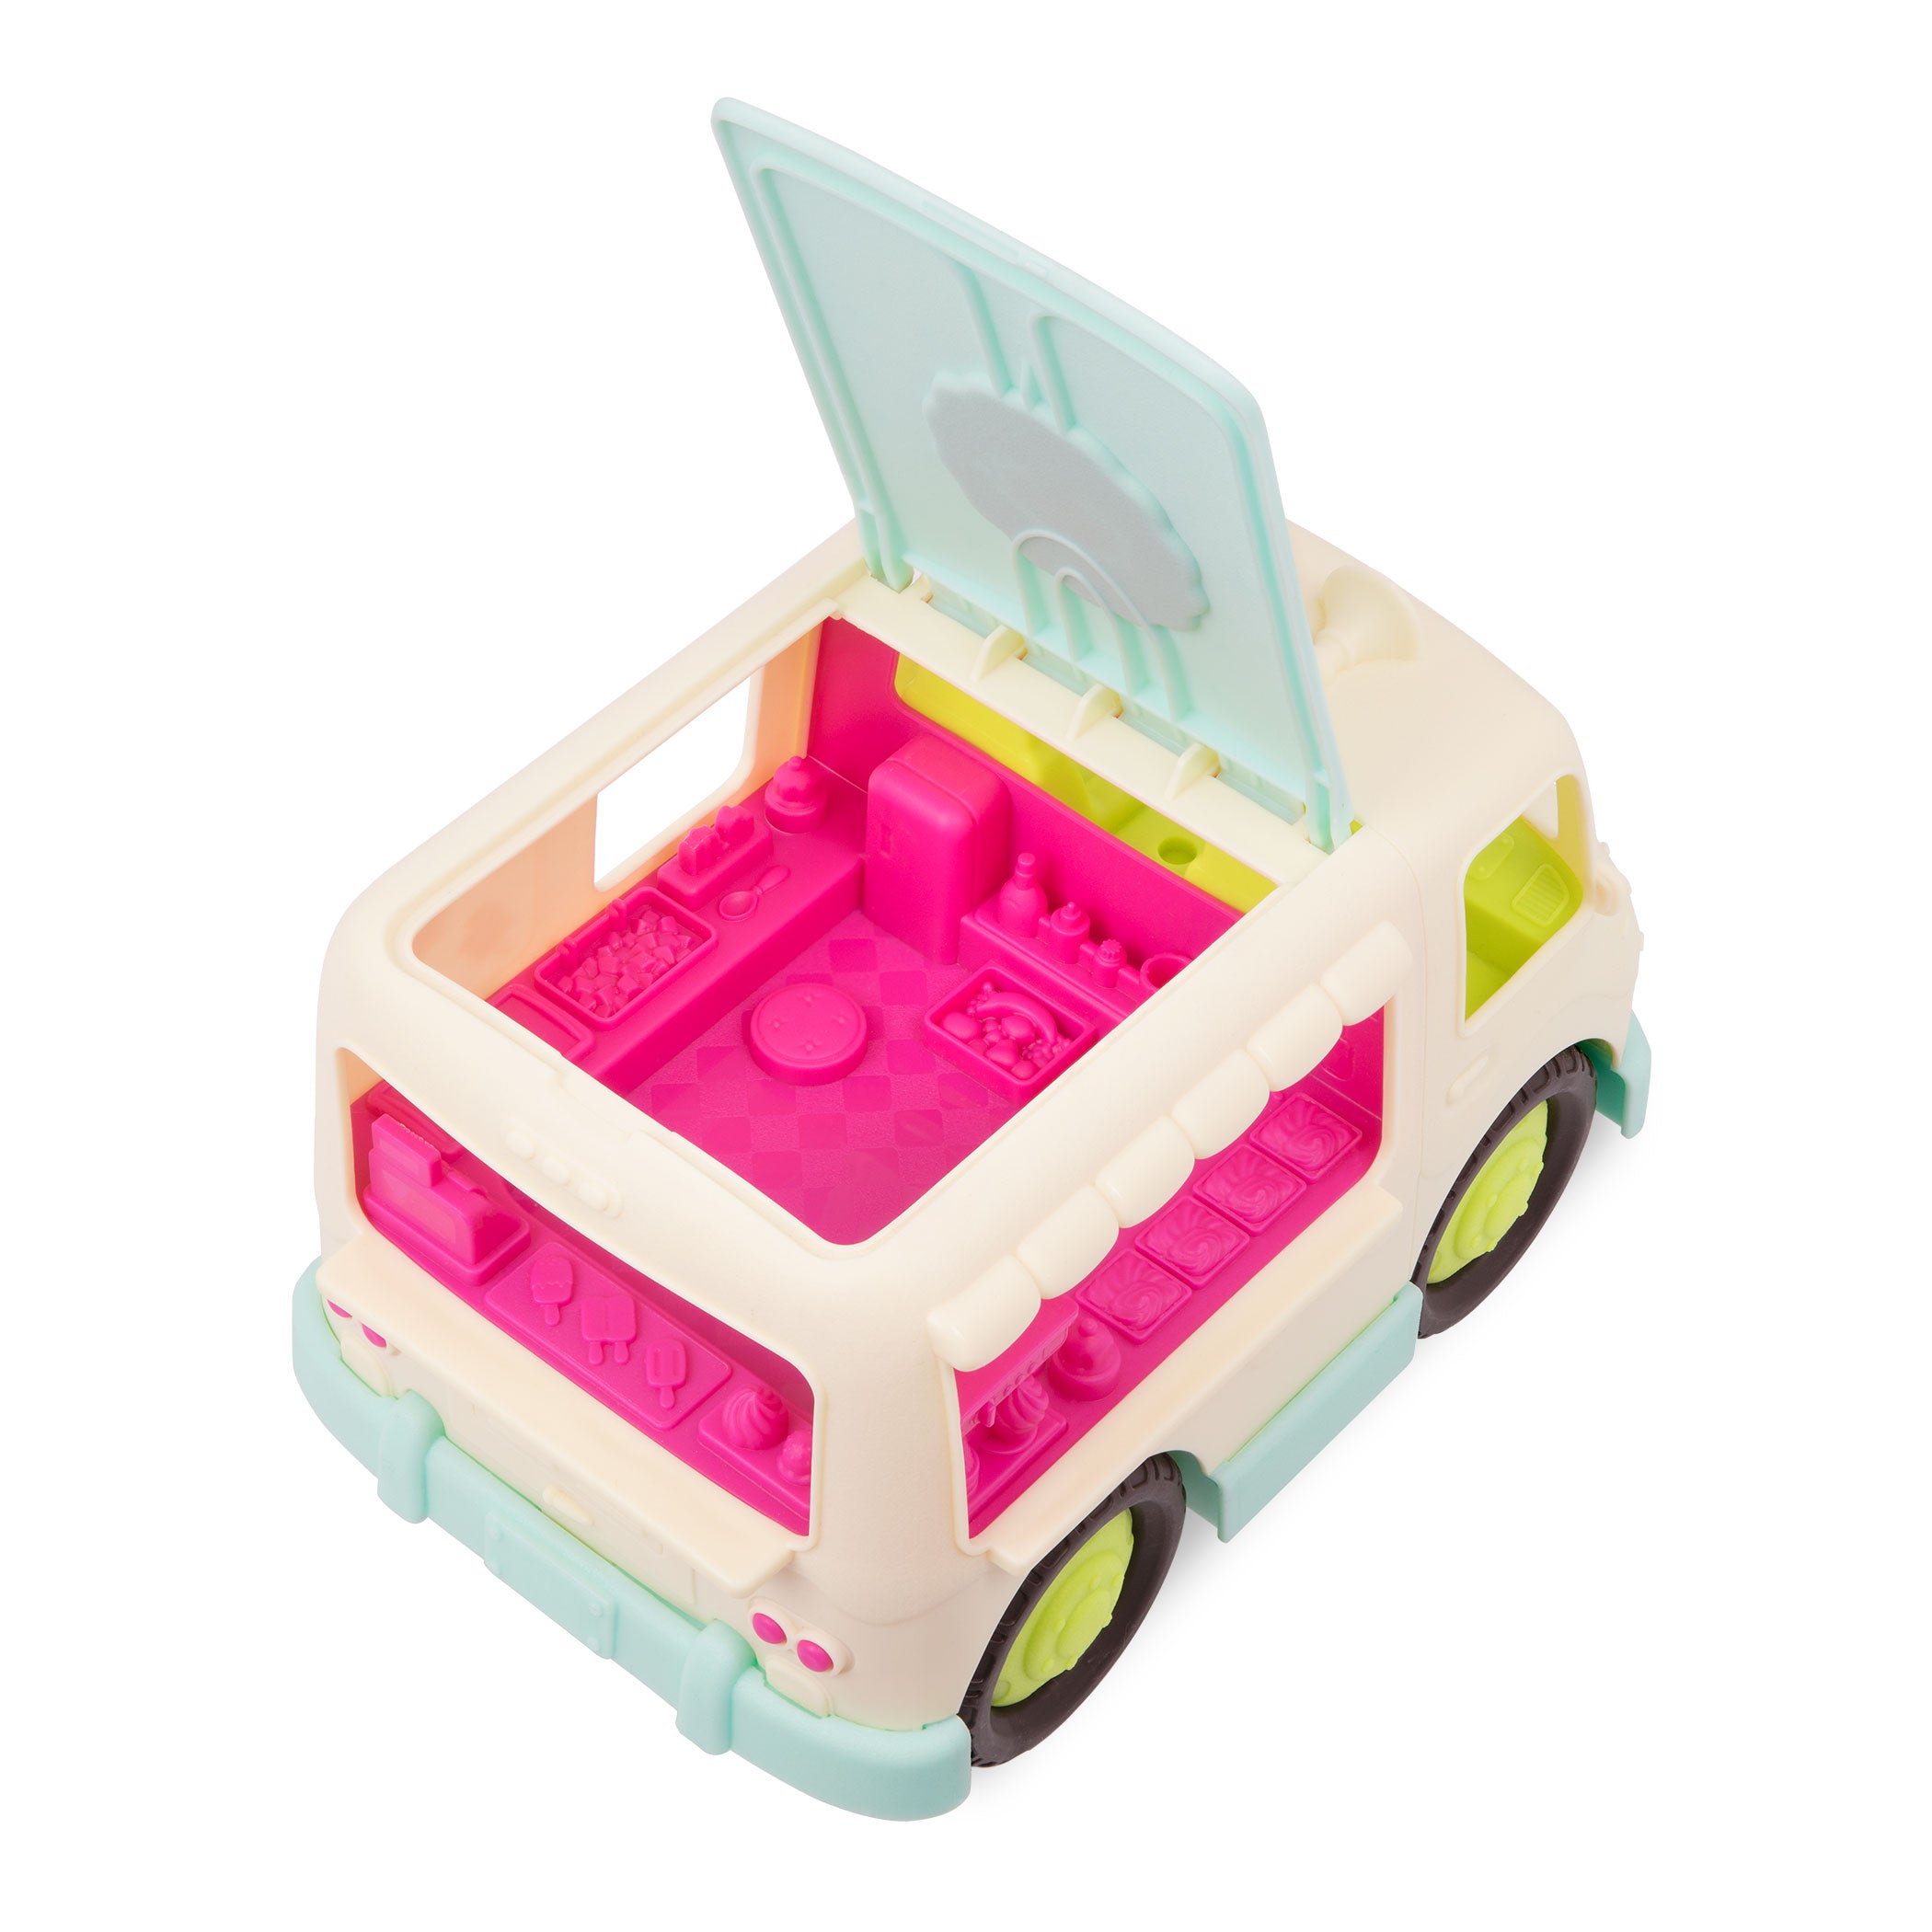 Toy ice cream truck.